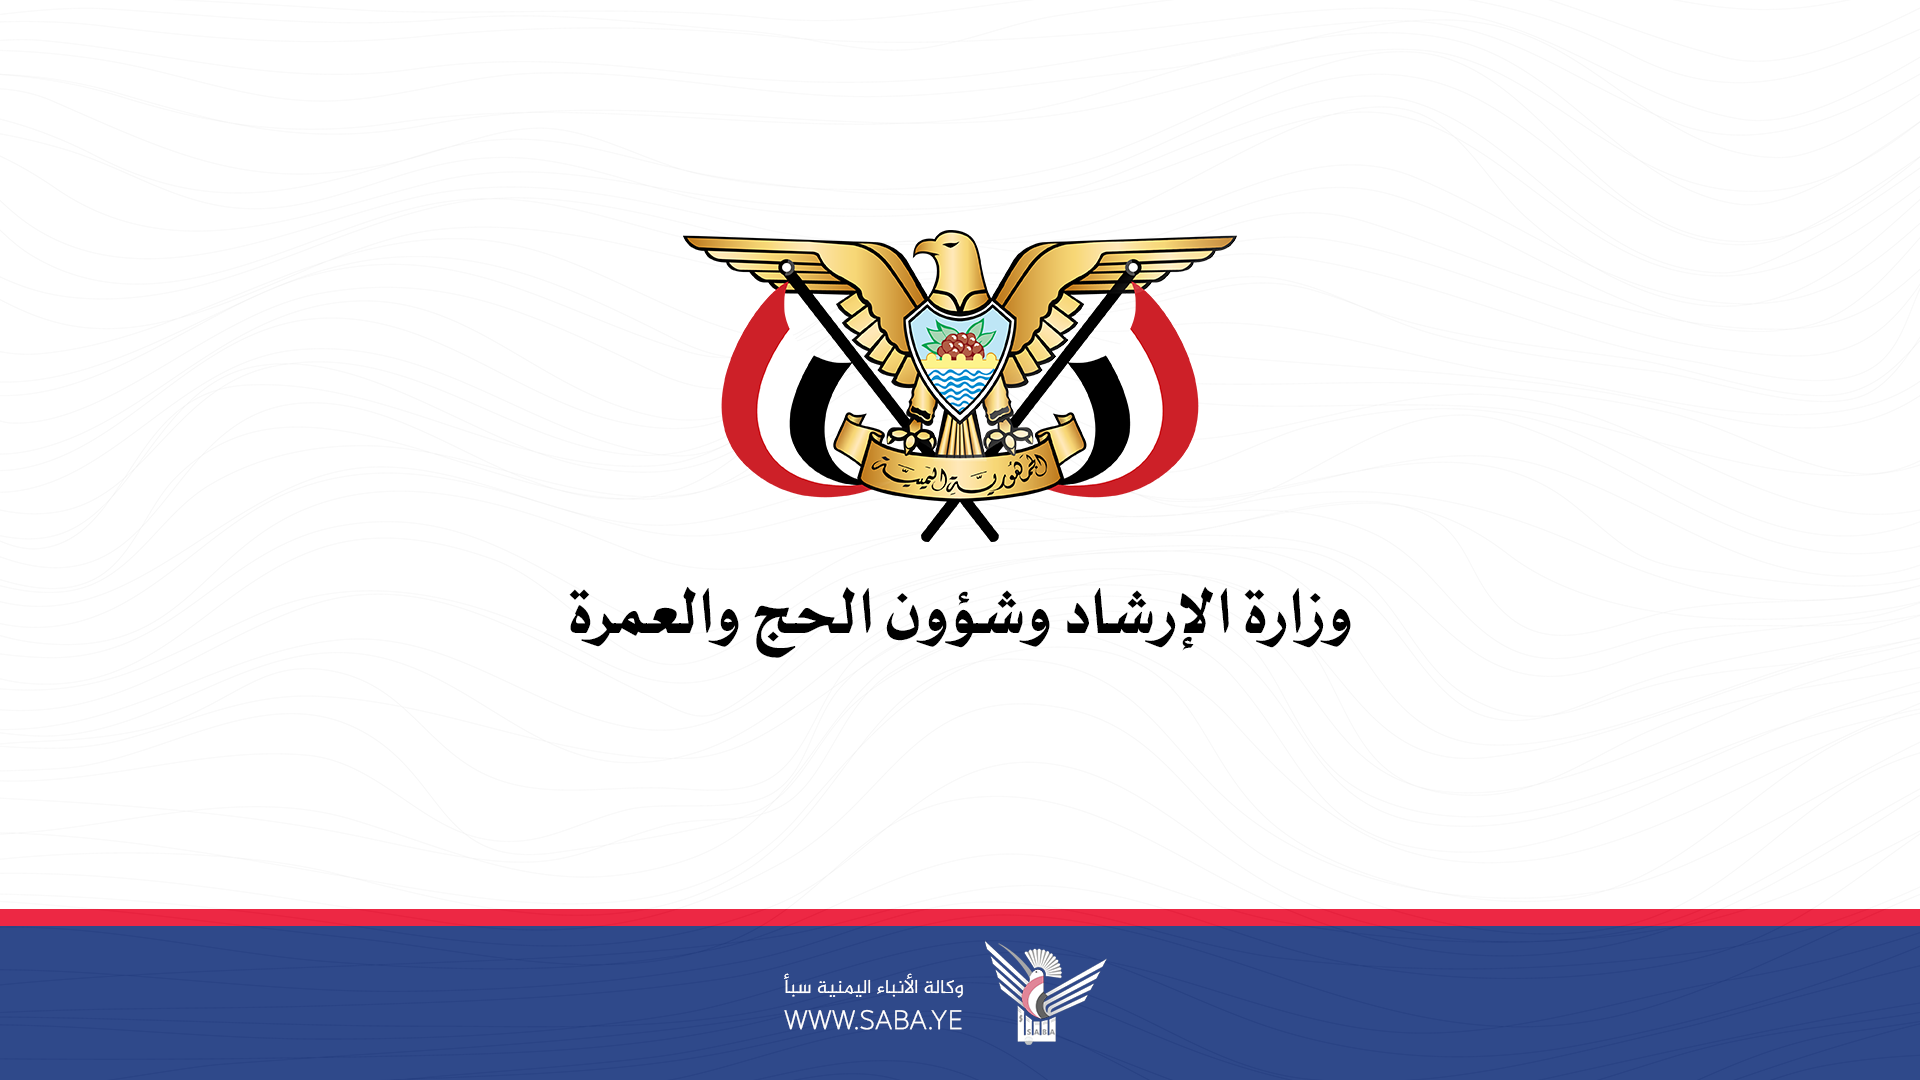 وزارة الإرشاد: تعرض معتمرين يمنيين لحادث مروع بعسير نتاج ممارسات النظام السعودي التعسفية